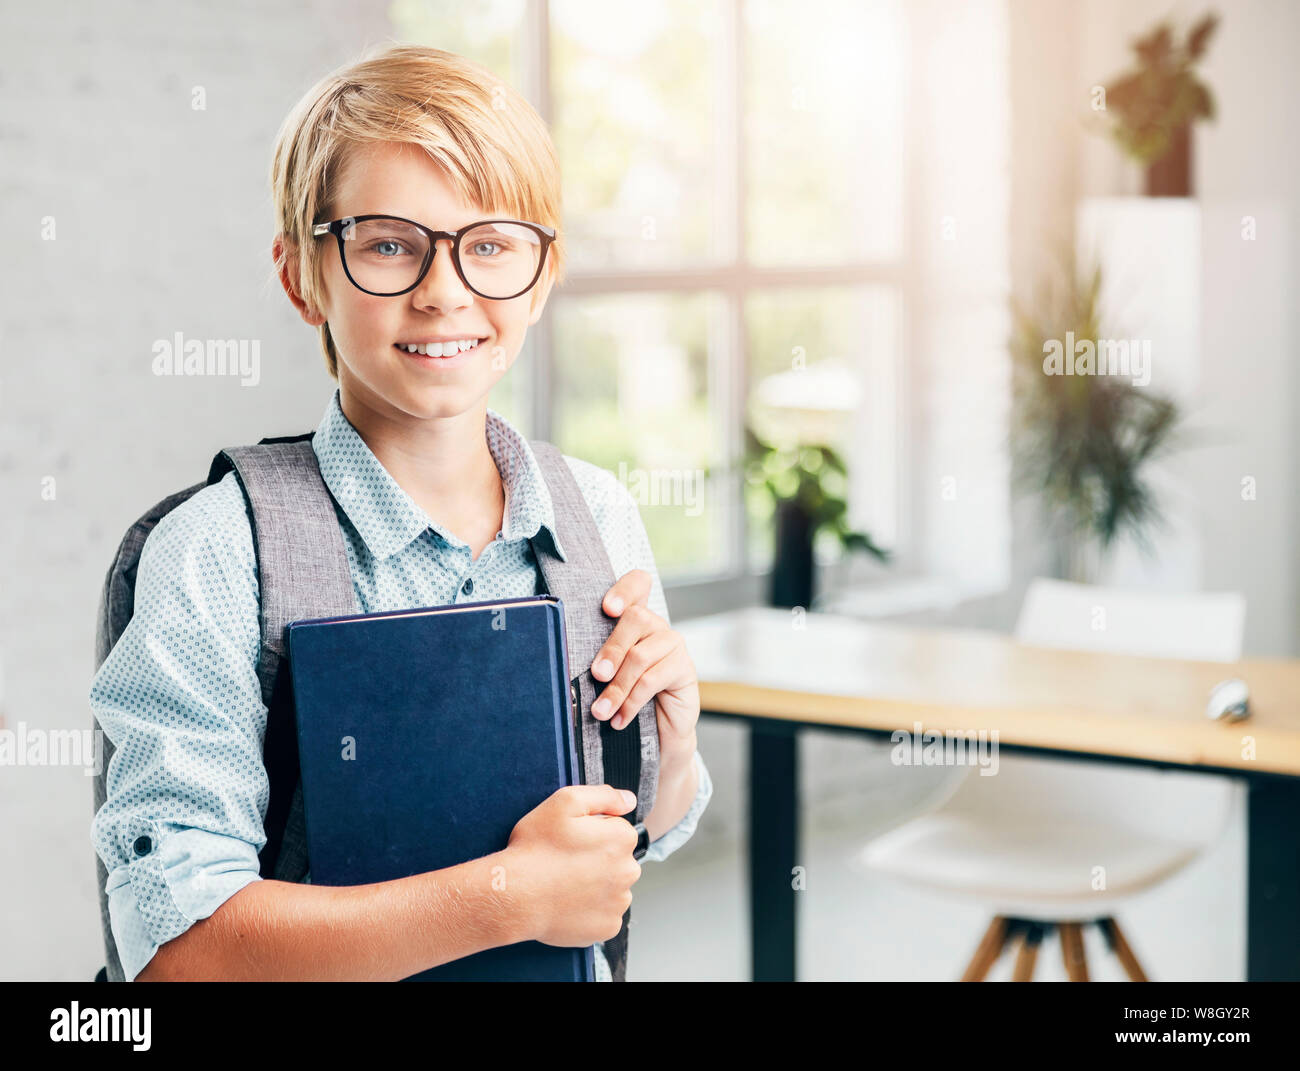 Smiling blonde kid avec les manuels scolaires dans une classe Banque D'Images